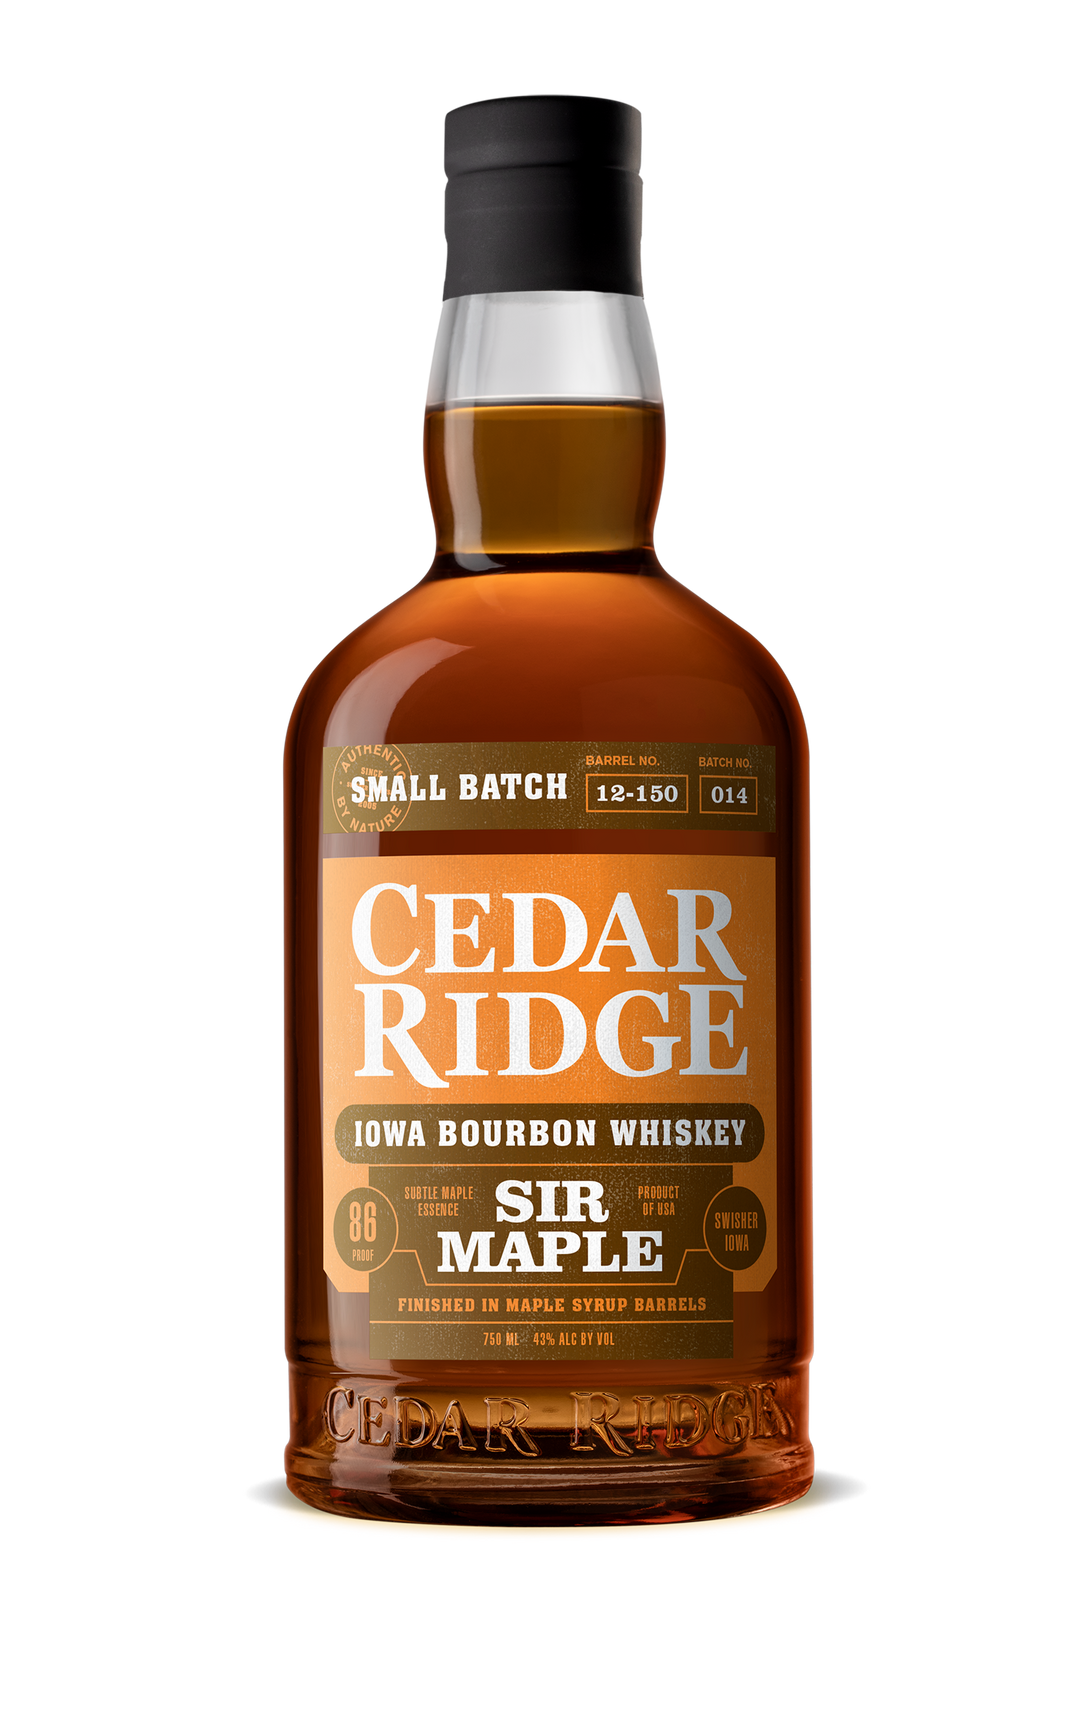 Cedar Ridge Sir Maple Bourbon